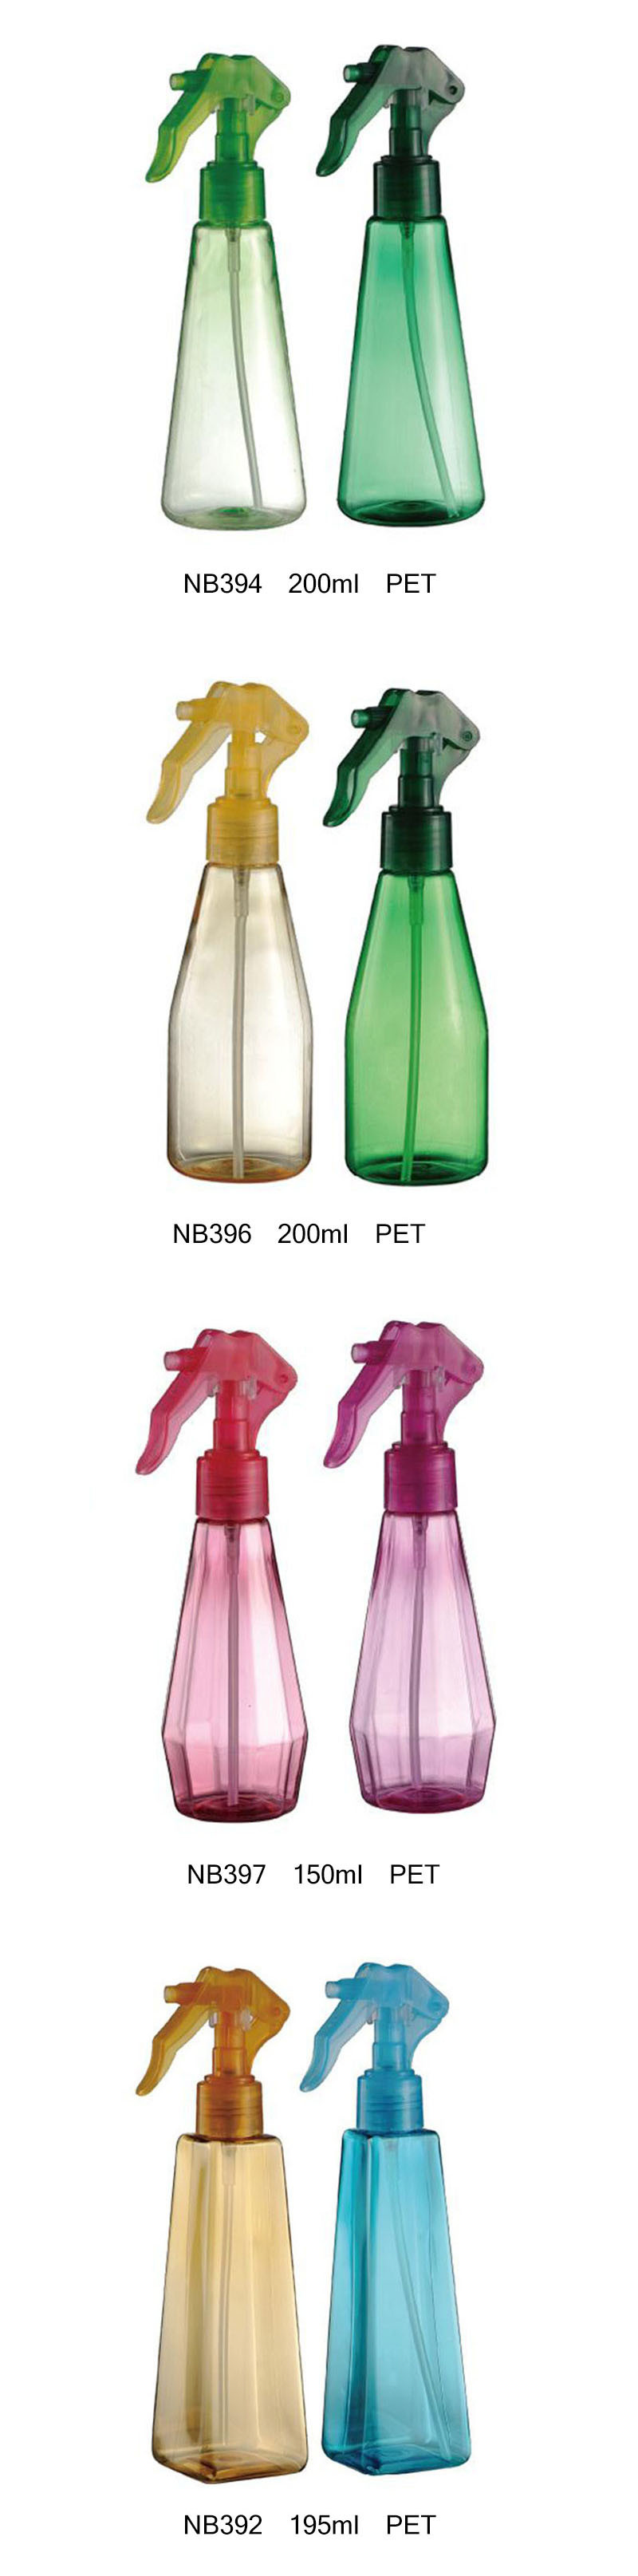 Plastic Trigger Sprayer Bottle for Household Cleaning (NB392)